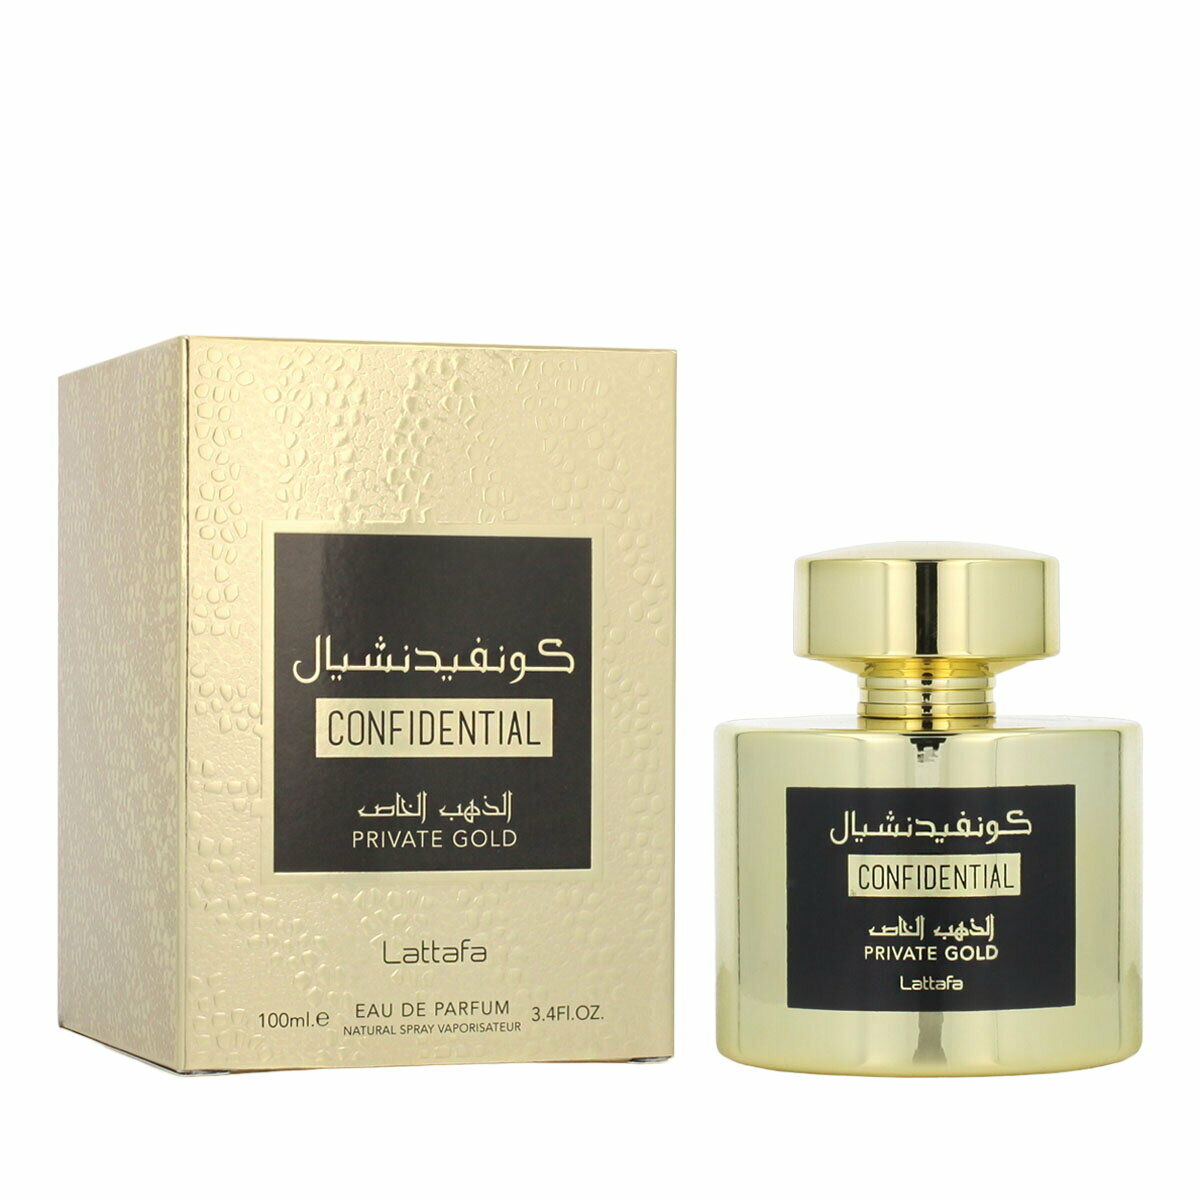 Uniseks Parfum Lattafa EDP Confidential Private Gold 100 ml